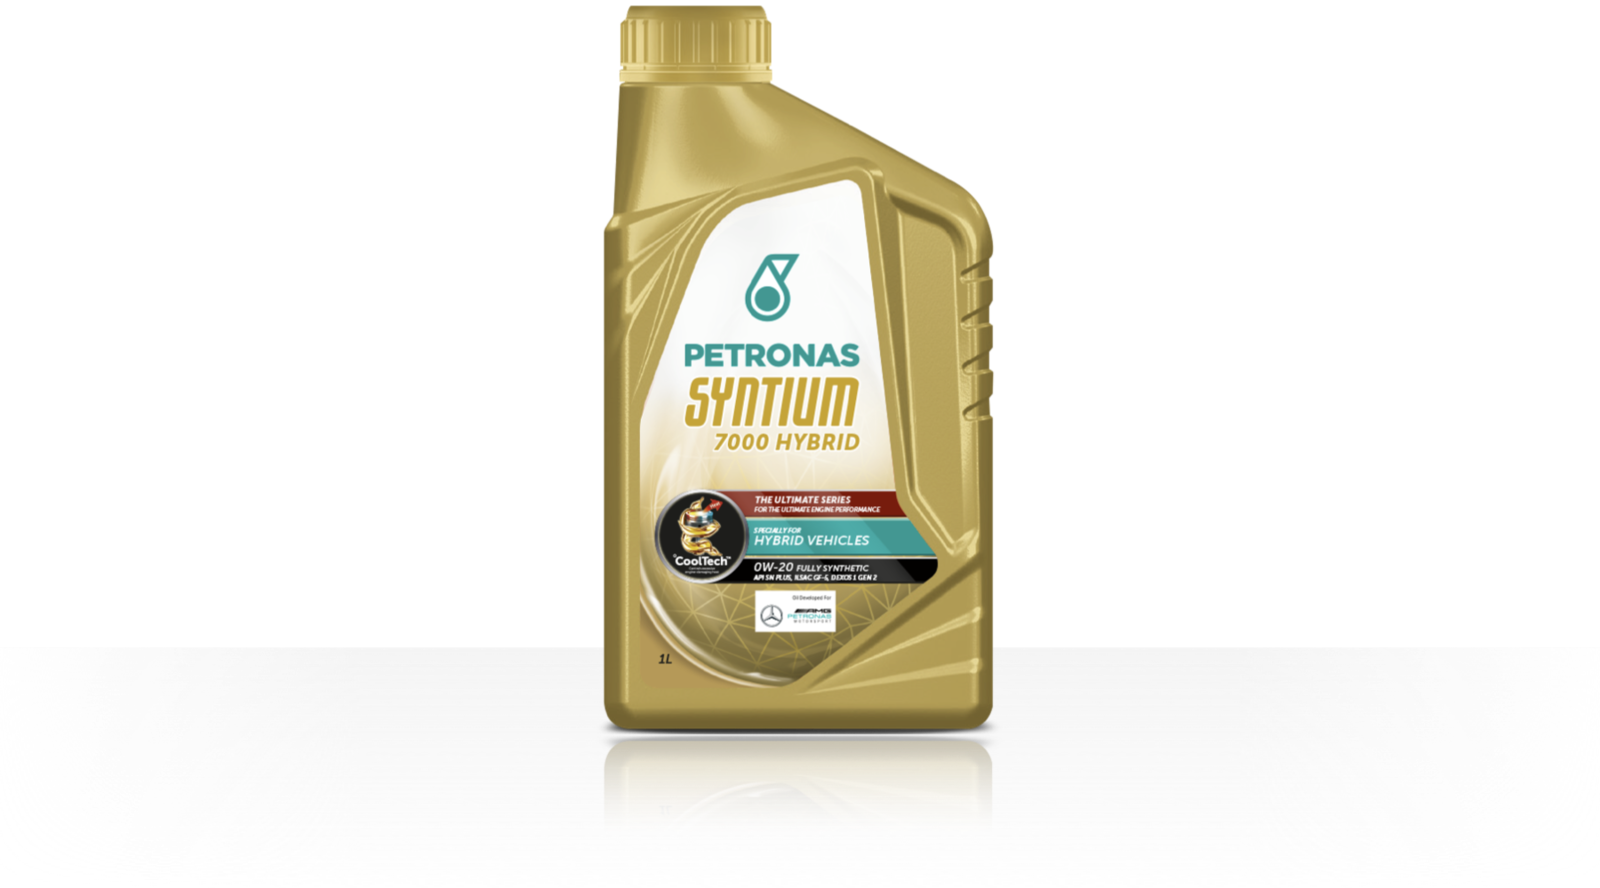 Petronas Syntium 7000 Hybrid 0w20 (API SN+, ILSAC GF5, Dexos 1 Gen 2